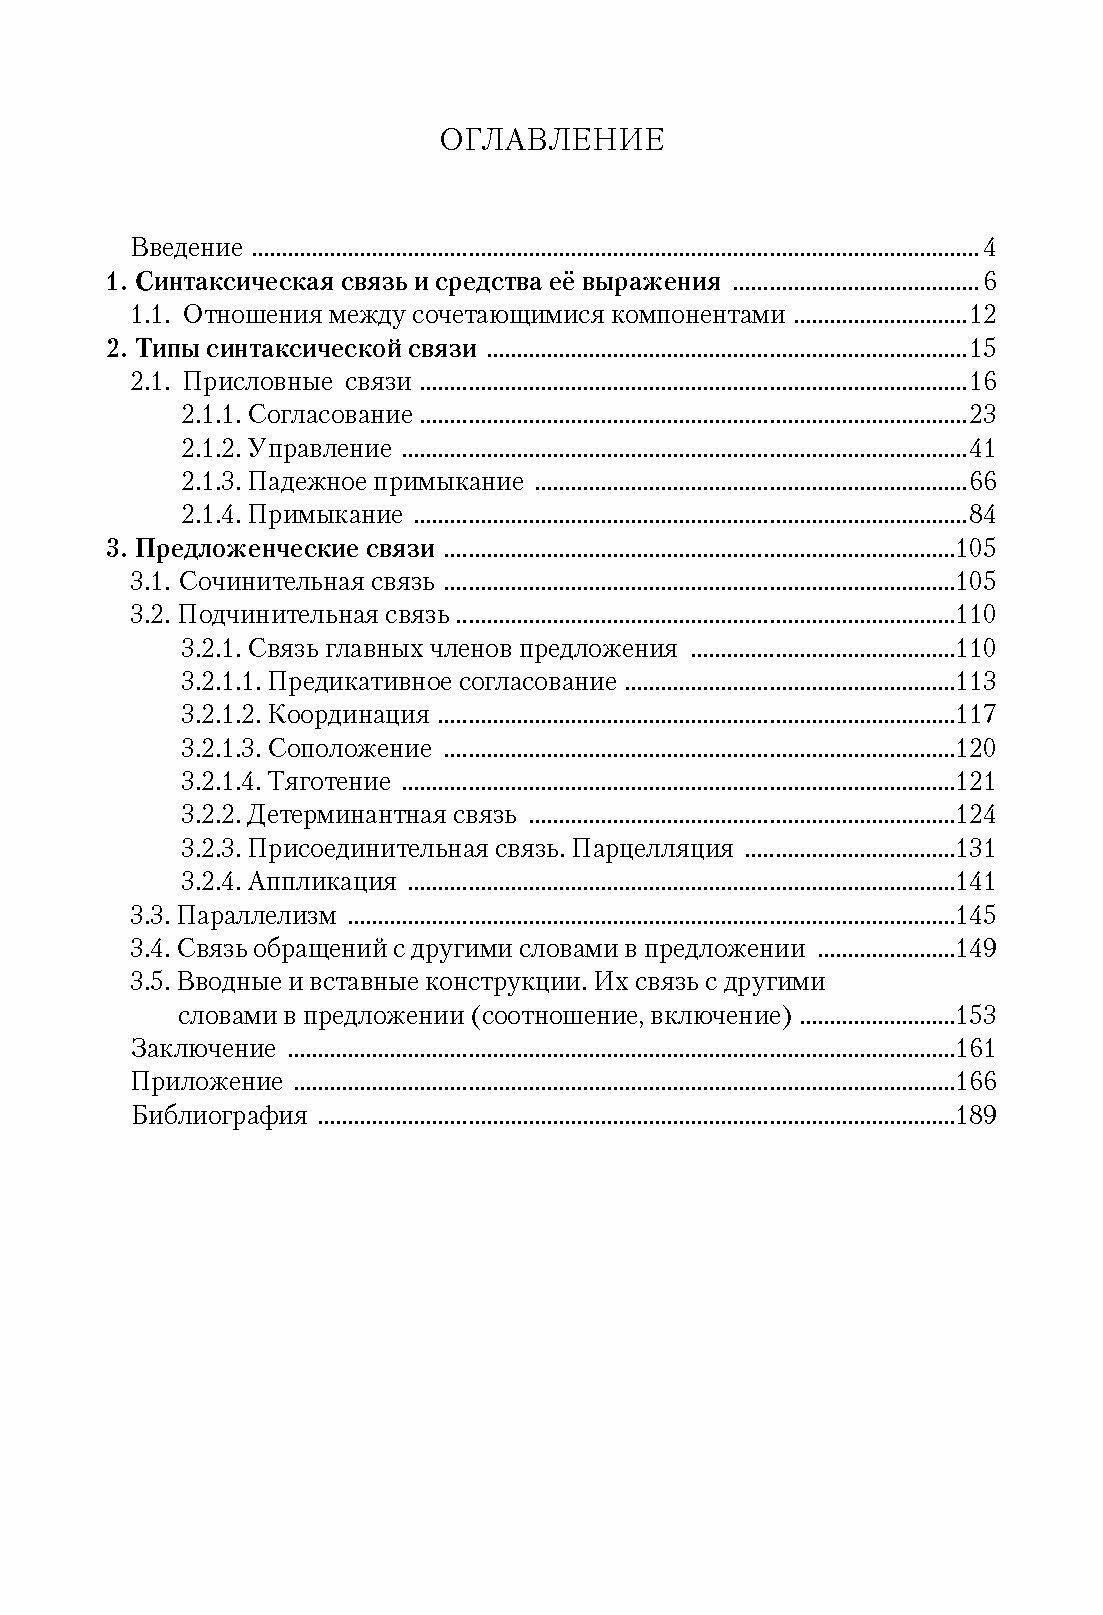 Присловные и предложенческие связи в русском синтаксисе. Учебное пособие - фото №5